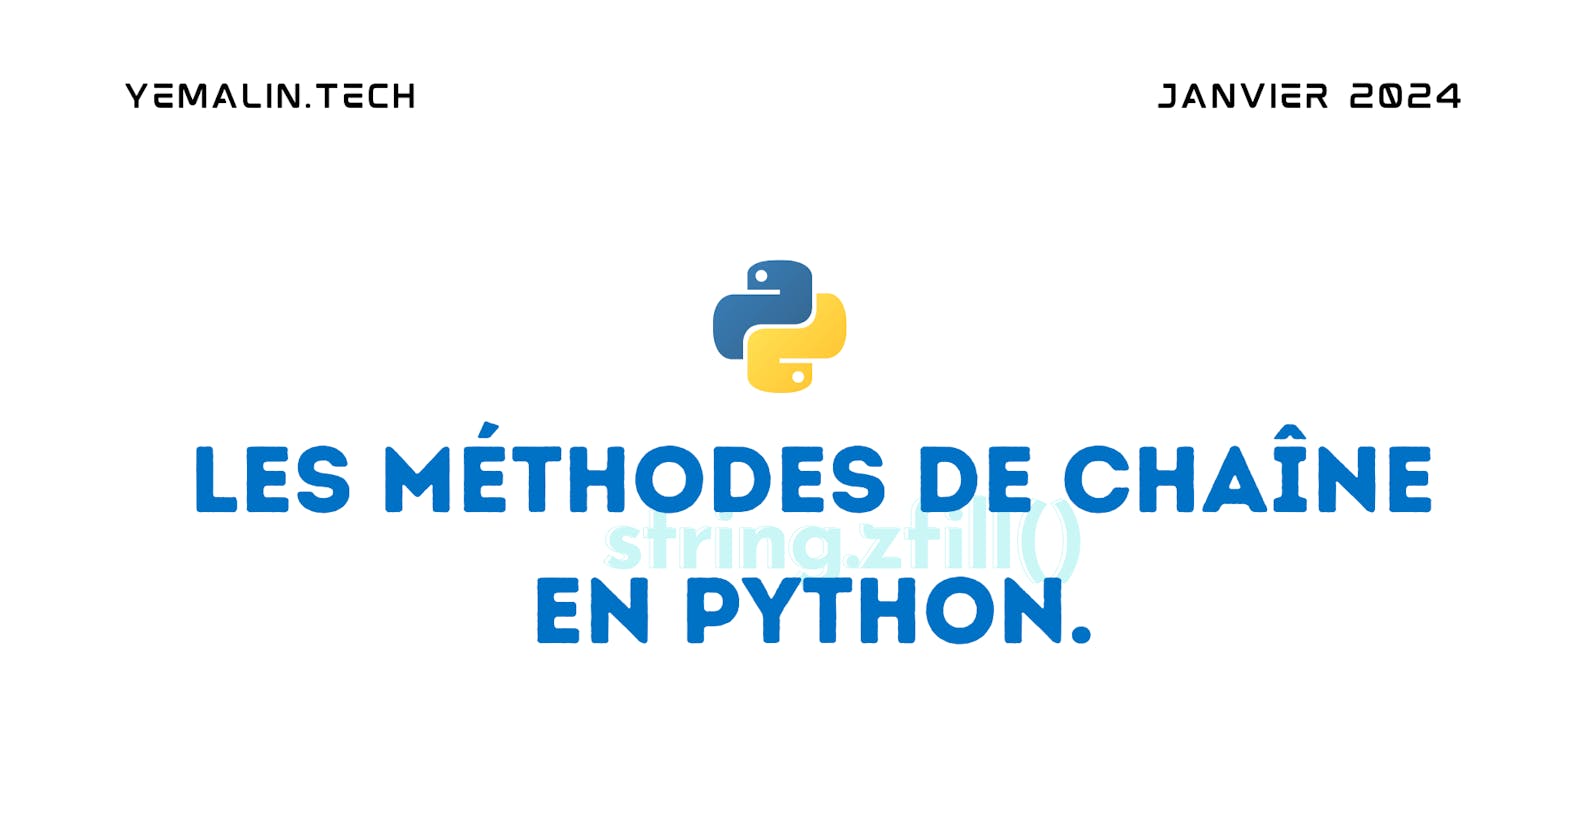 Les Méthodes de Chaîne en Python.